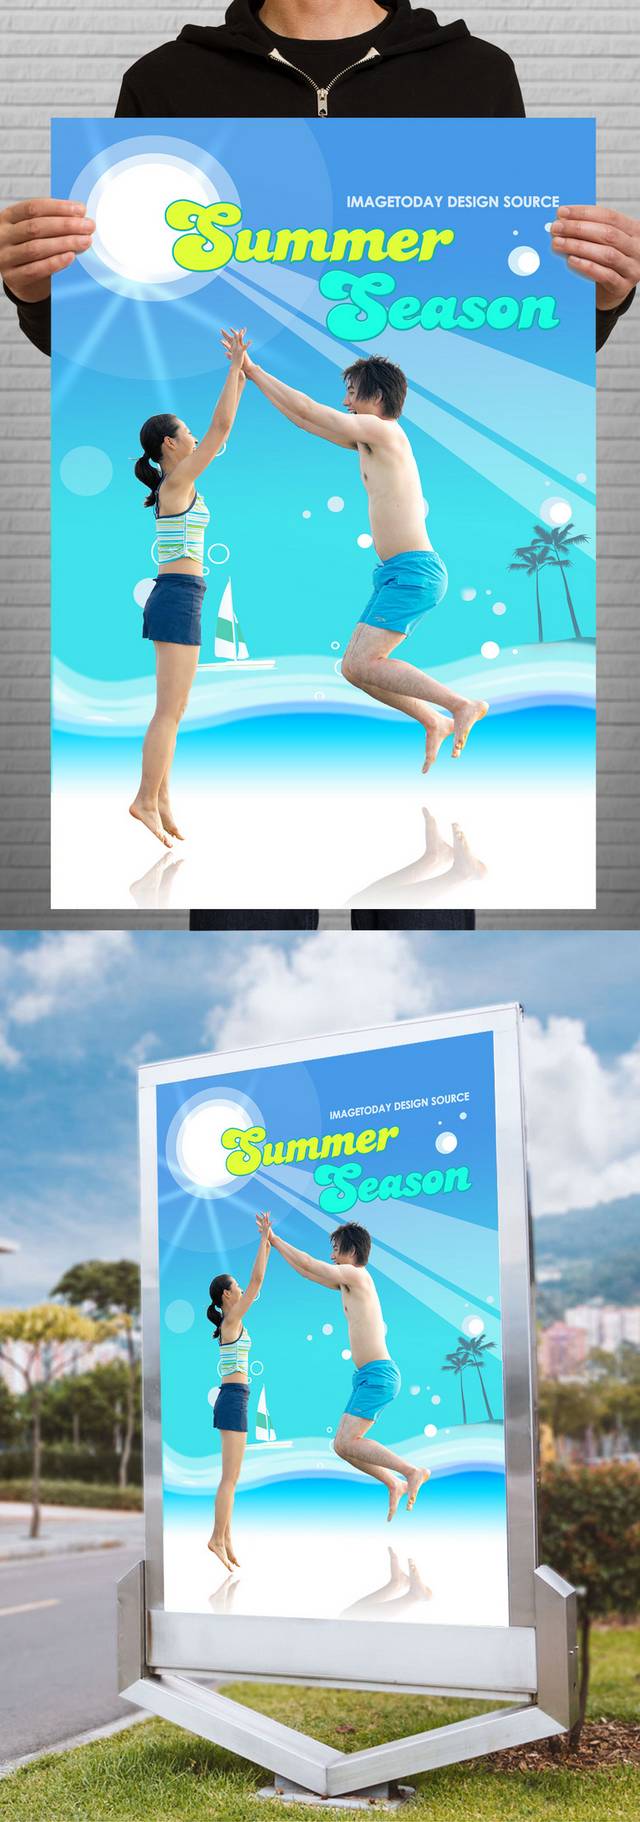 夏日清凉海报宣传设计